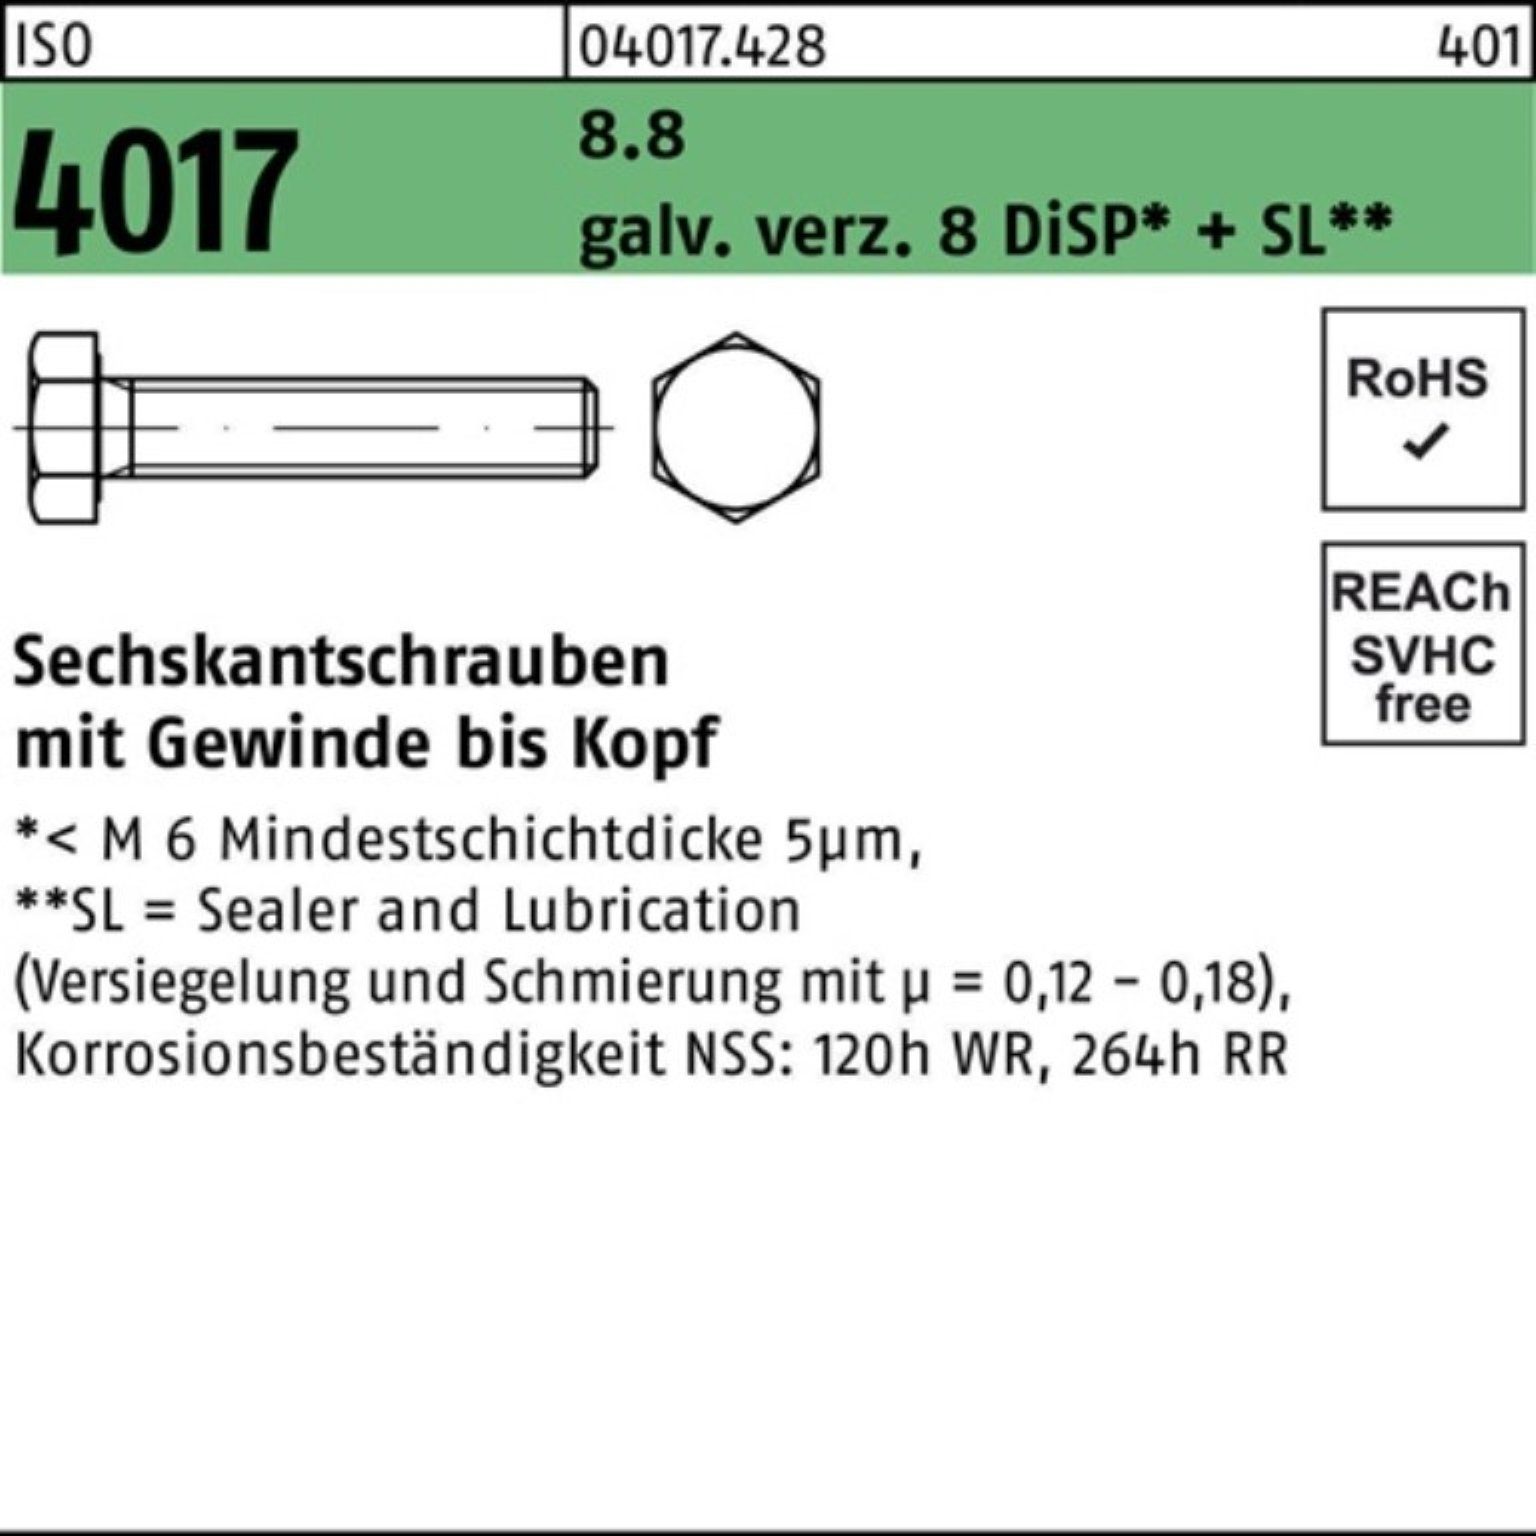 4017 galv.verz. VG Sechskantschraube DiSP 8 Pack 8.8 100er ISO M16x Bufab Sechskantschraube 25